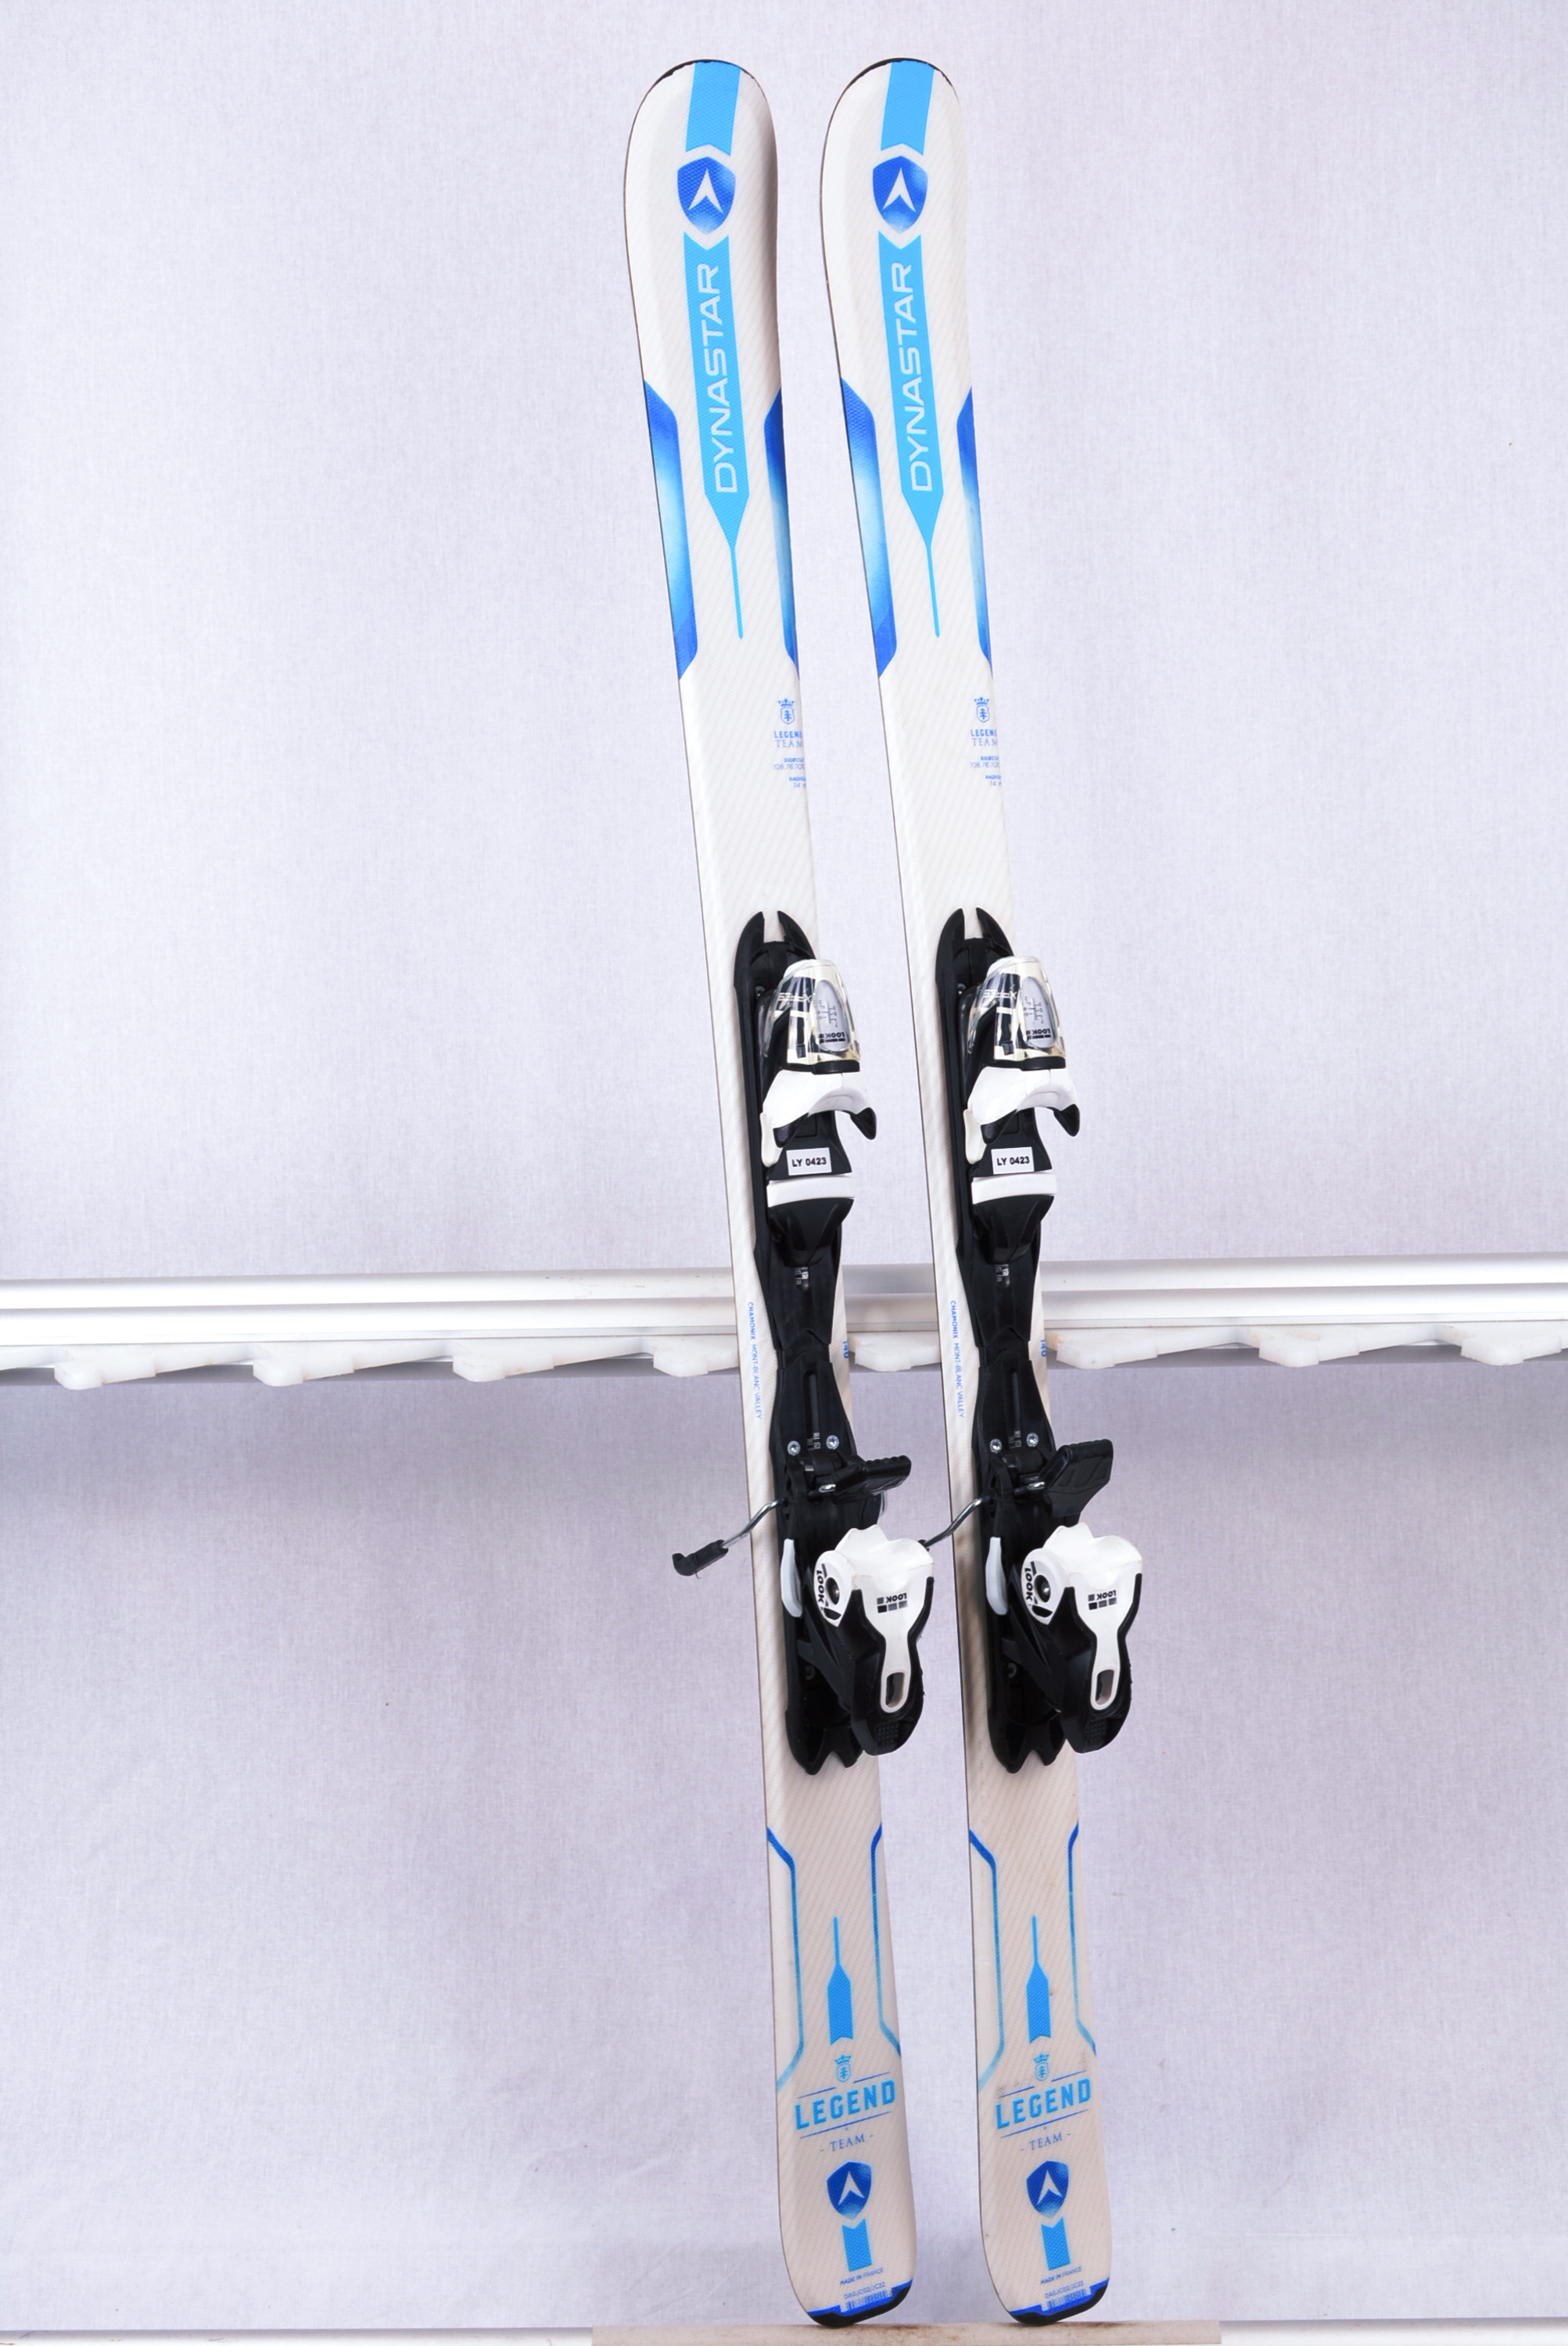 Dynastar 80cm Skis Look Bindings or similar Kids Ski Package Nordica Boots 